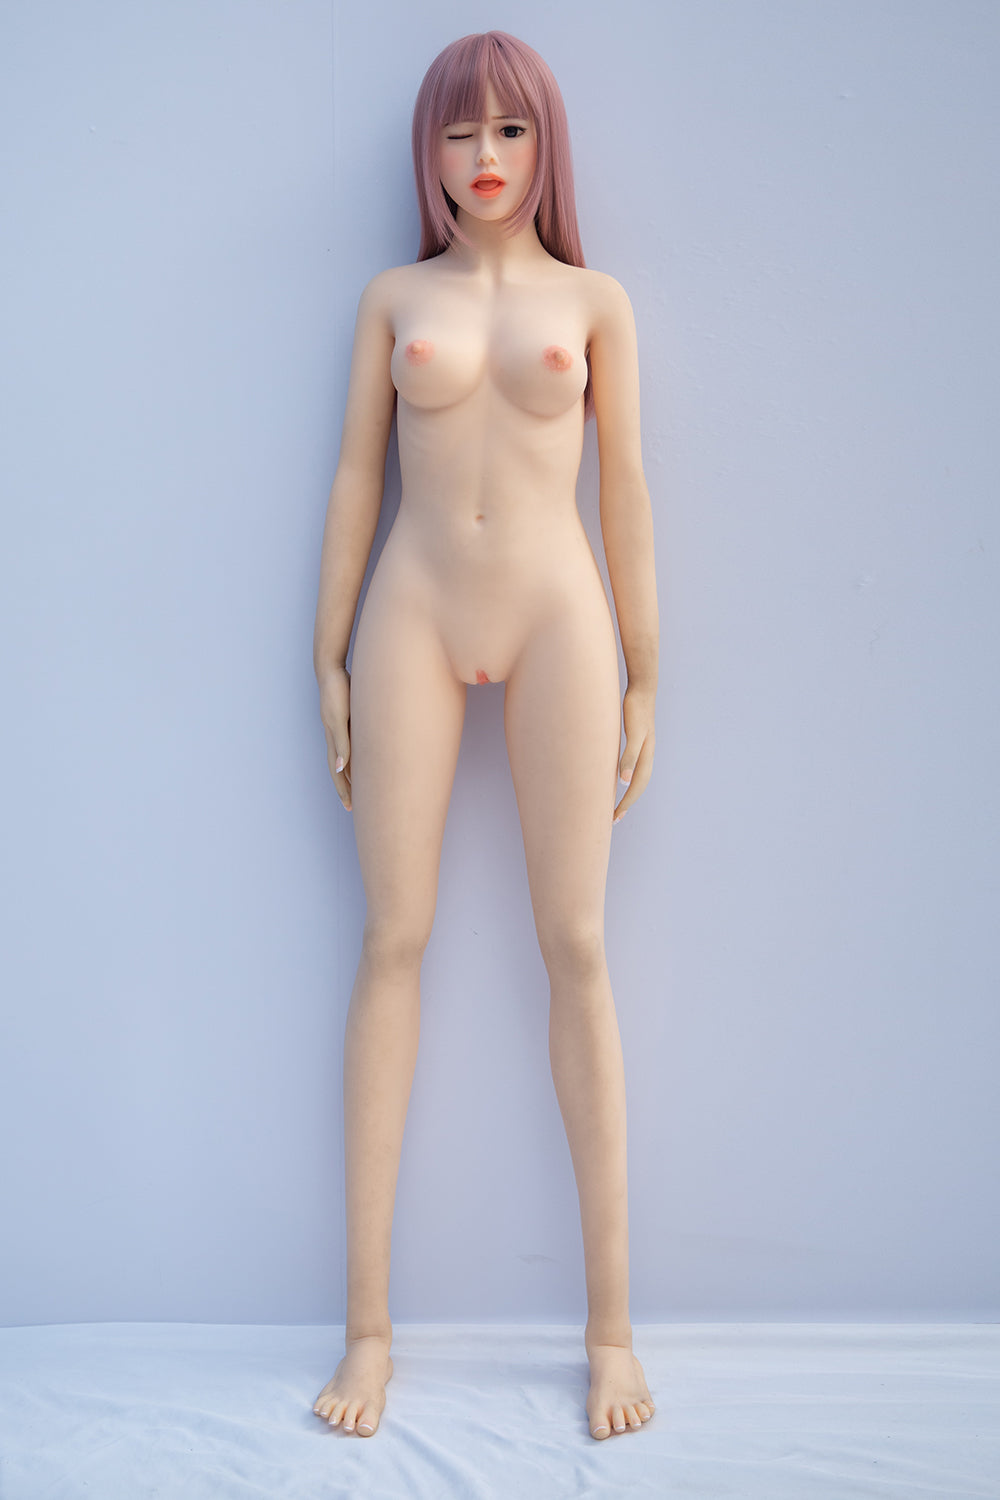 Giselle-5 ft 1 in / 156 cm Lifelike Sex Doll